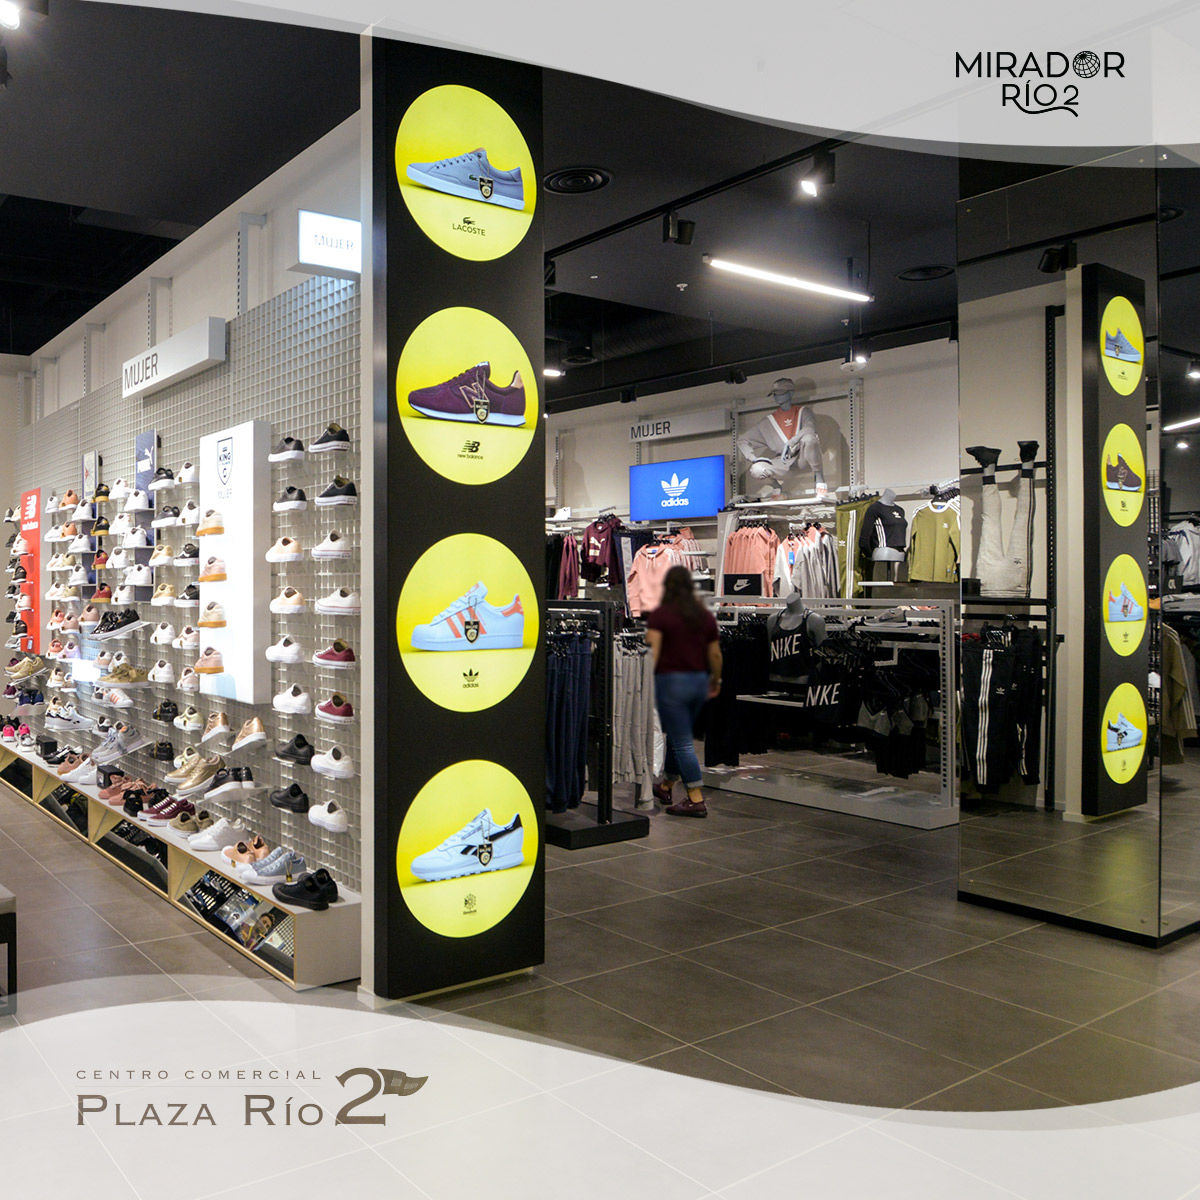 Adidas Plaza Rio 2, Buy Now, Deals, OFF, www.busformentera.com